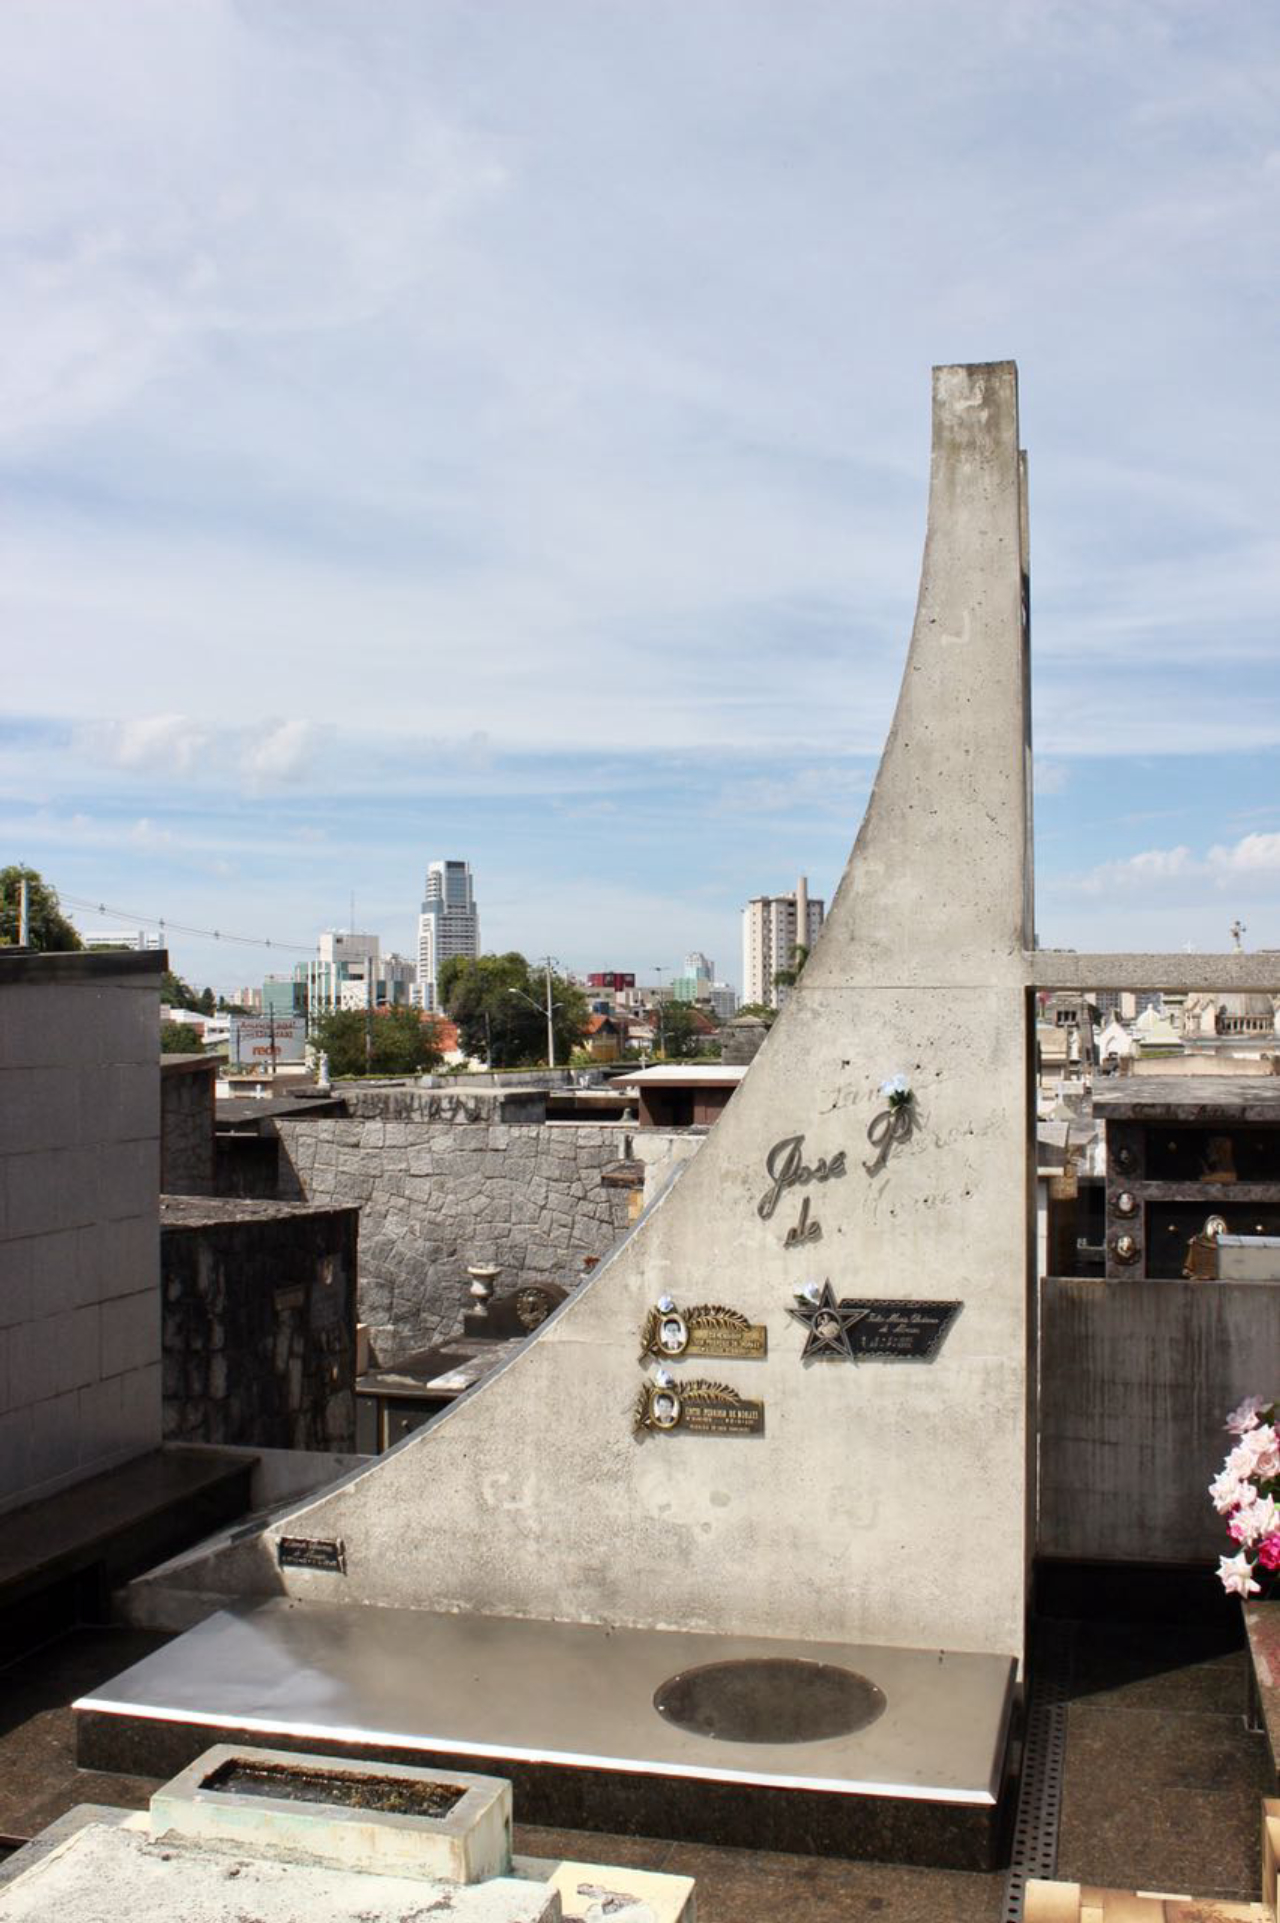 Túmulo da família Pedroso, sobrenome do "Rei dos Tapetes", é considerado um dos marcos de arquitetura modernista dentro do cemitério, com uso de linhas simples, metal, vidro e concreto aparente.